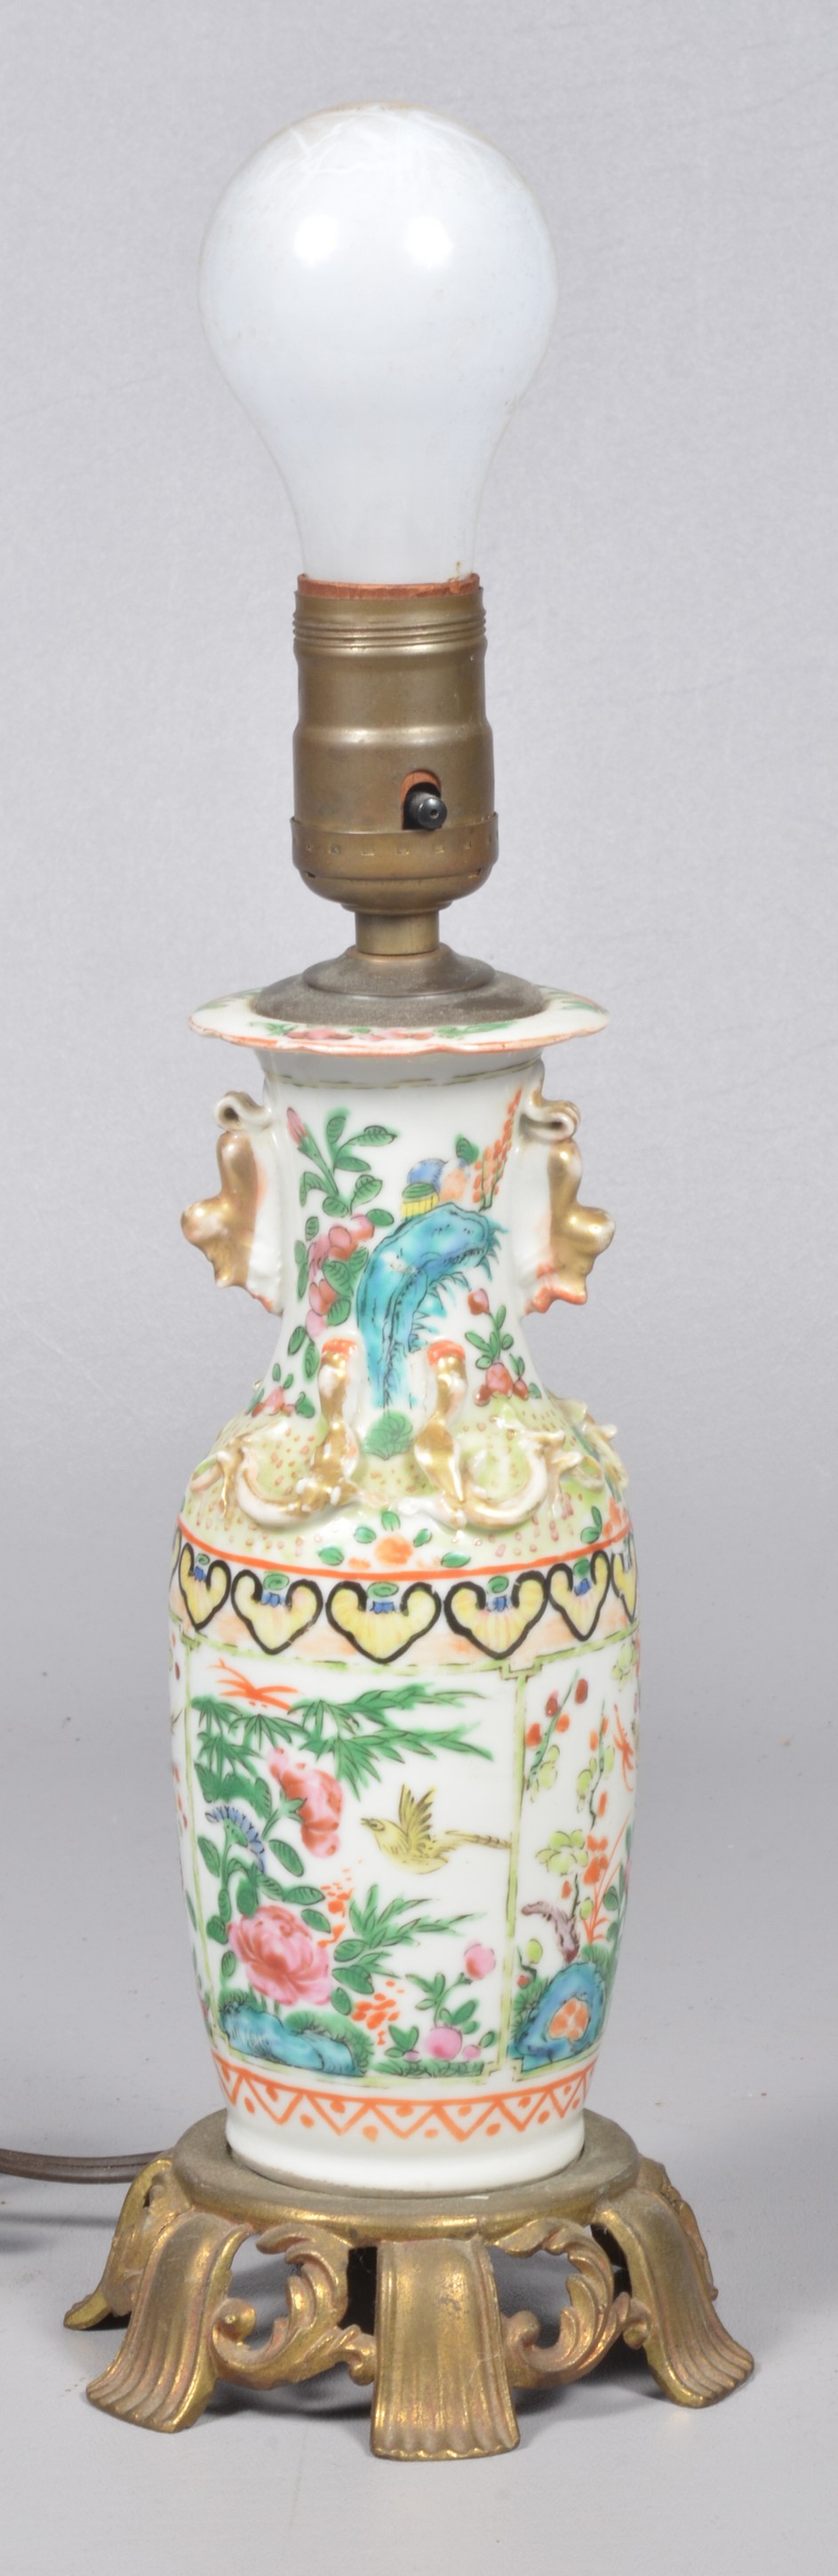 Chinese porcelain vase floral 3b6682